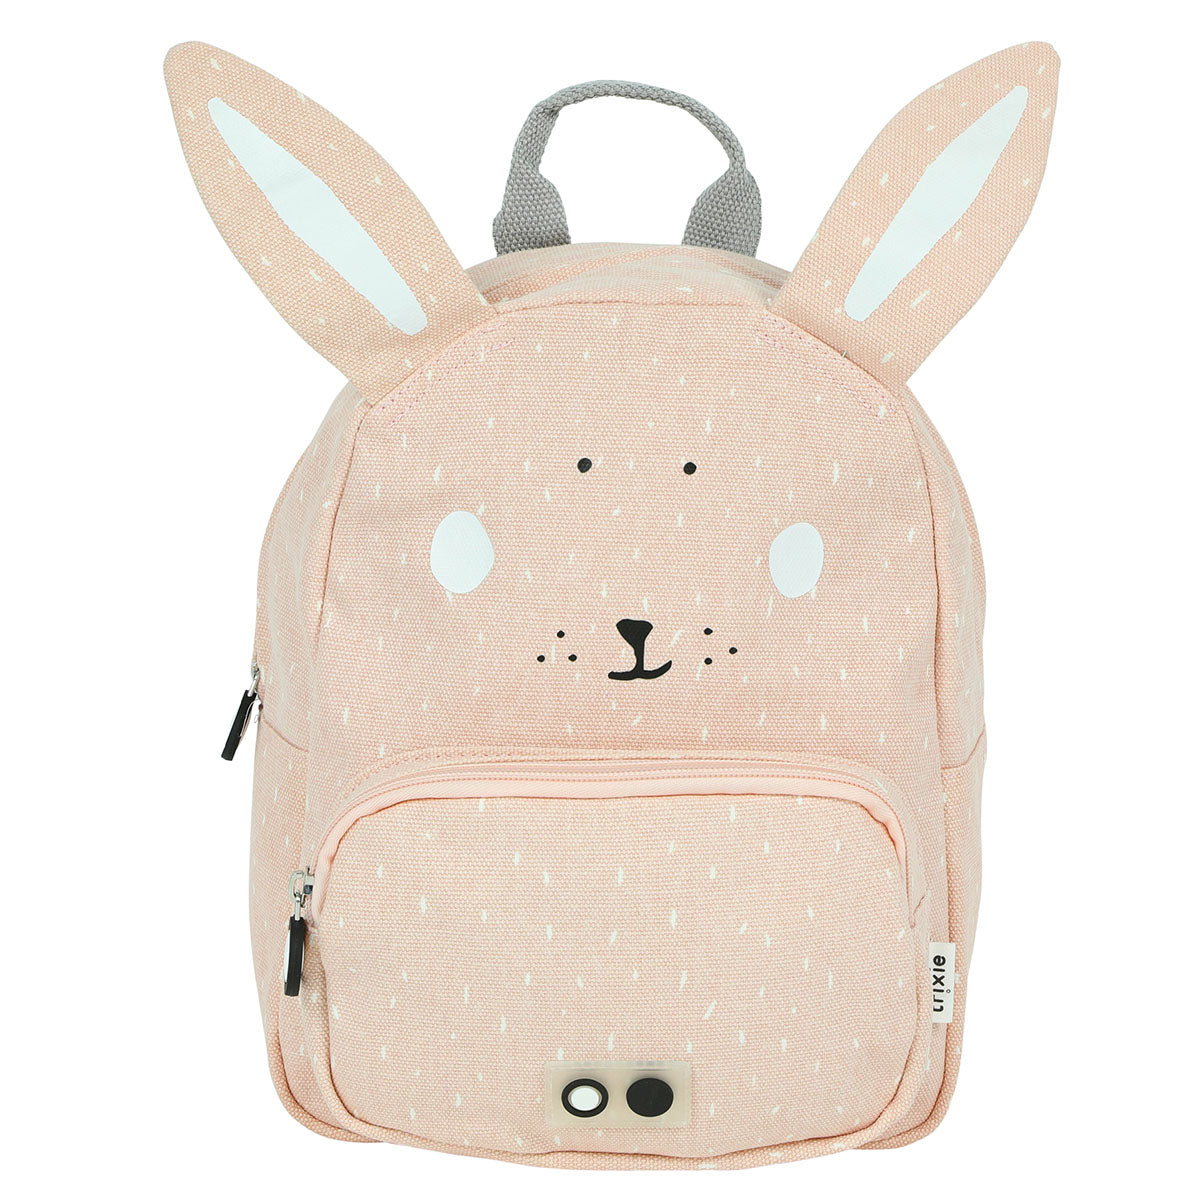 Met de Trixie Mrs. Rabbit rugzak klein ben je klaar voor avontuur! In deze roze schooltas kan je al je spulletjes kwijt voor een dagje weg. De roze rugzak komt in de vorm van een konijntje. VanZus.